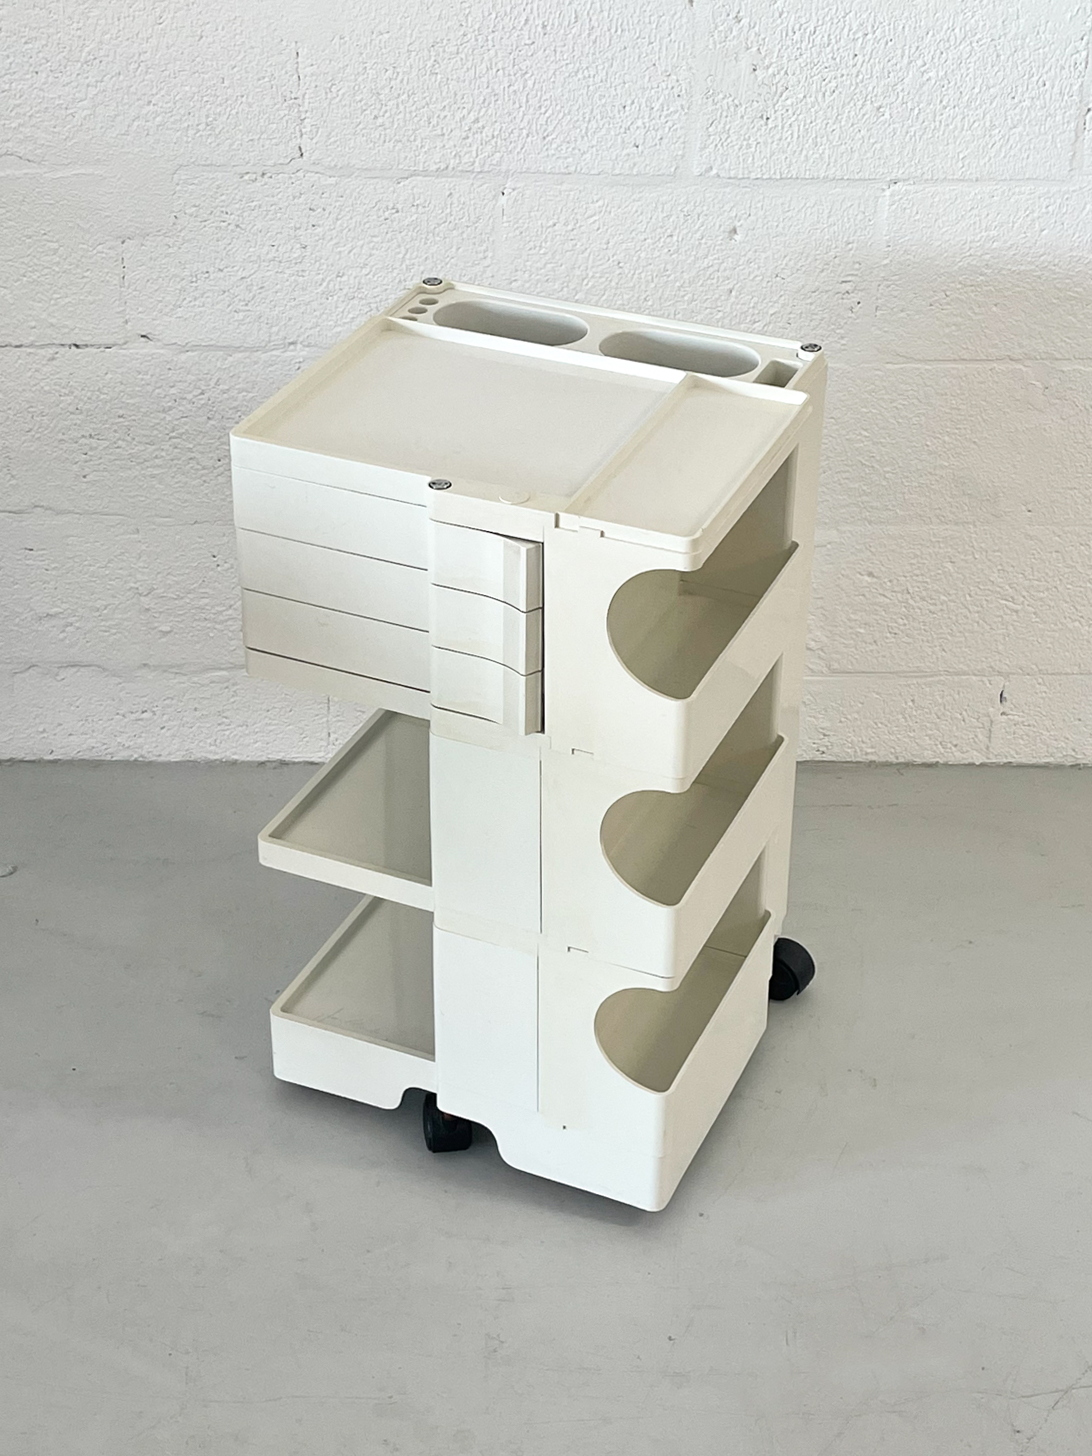 'Boby' Cart in White by Joe Colombo for Bieffeplast